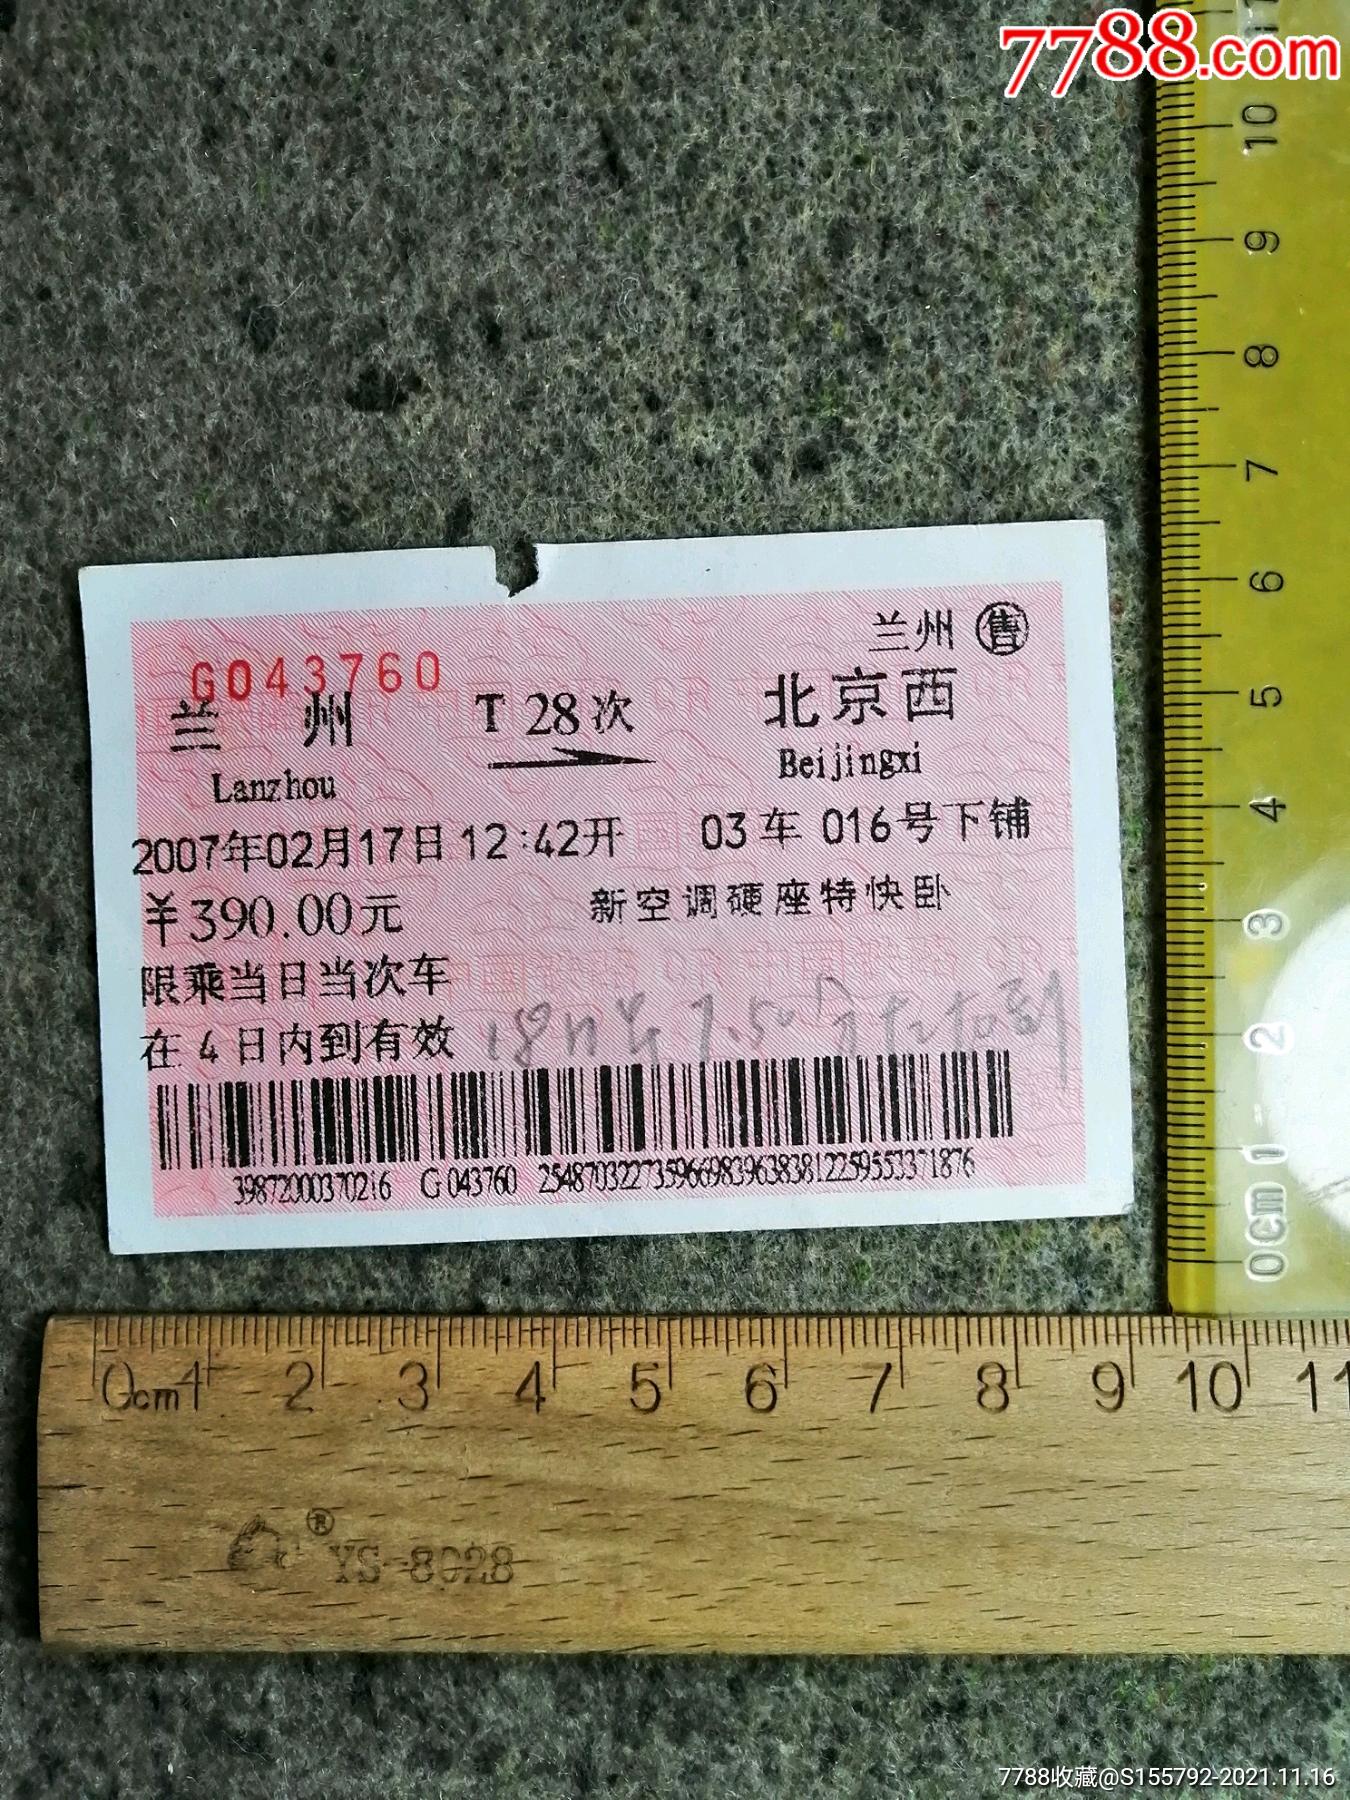 3,1坐火车去贵州多少钱连云港贵阳绿皮火车票价260元左右硬座,车次k